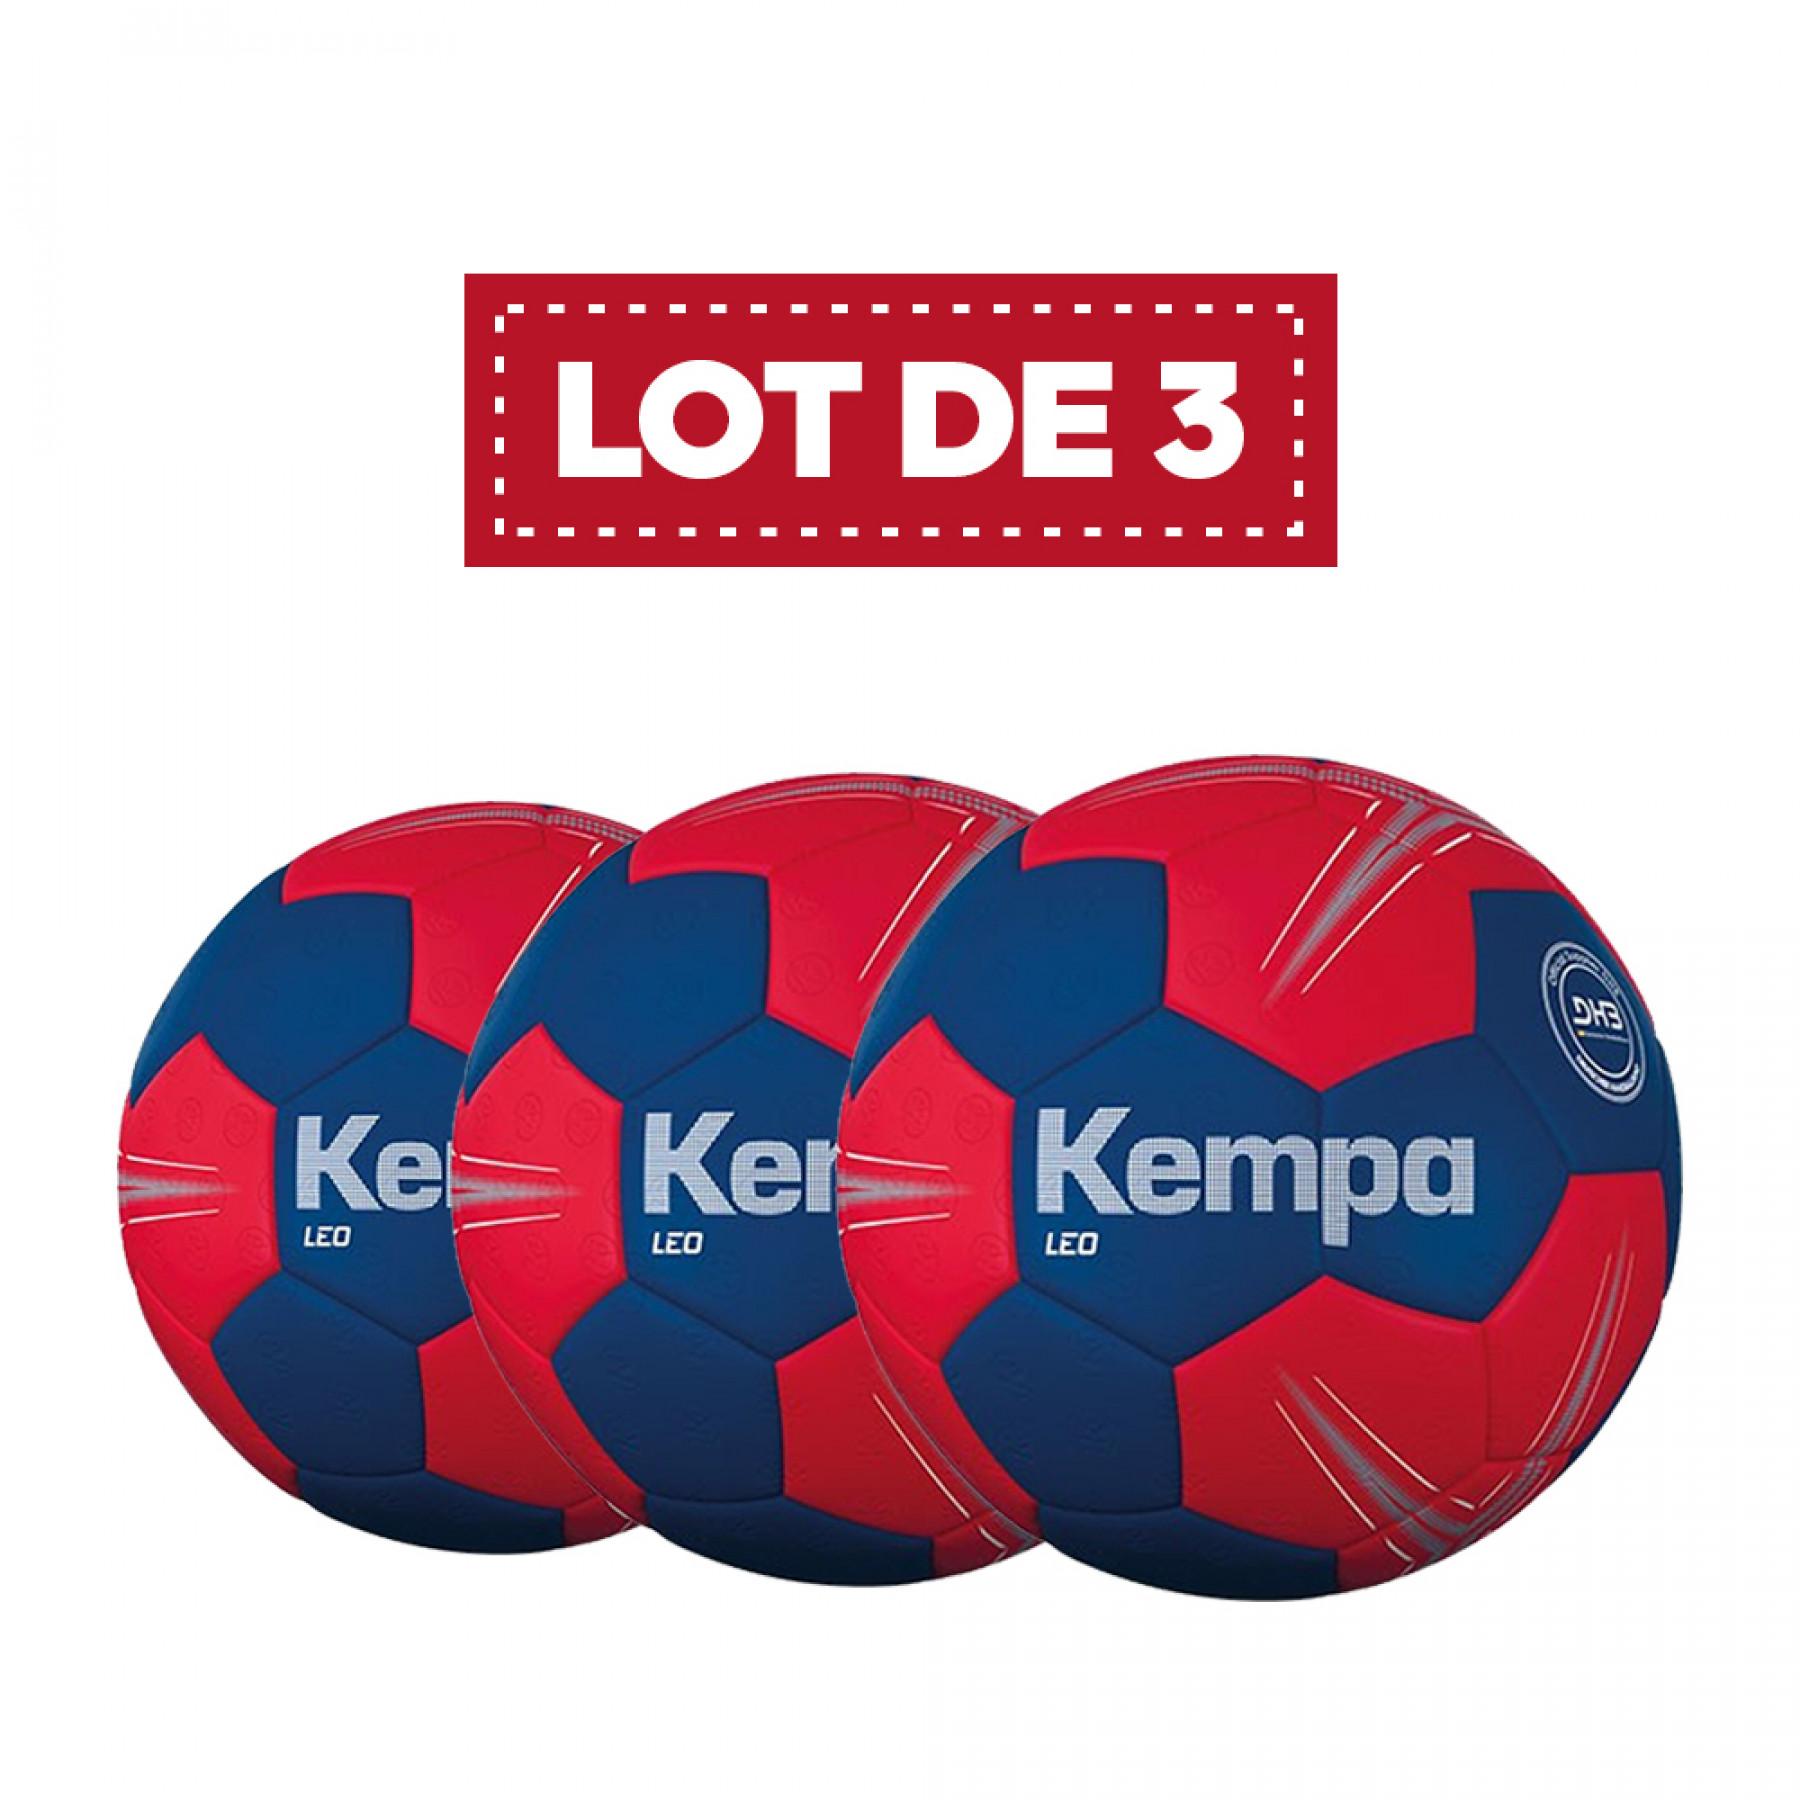 Lot de 3 ballons Leo Kempa